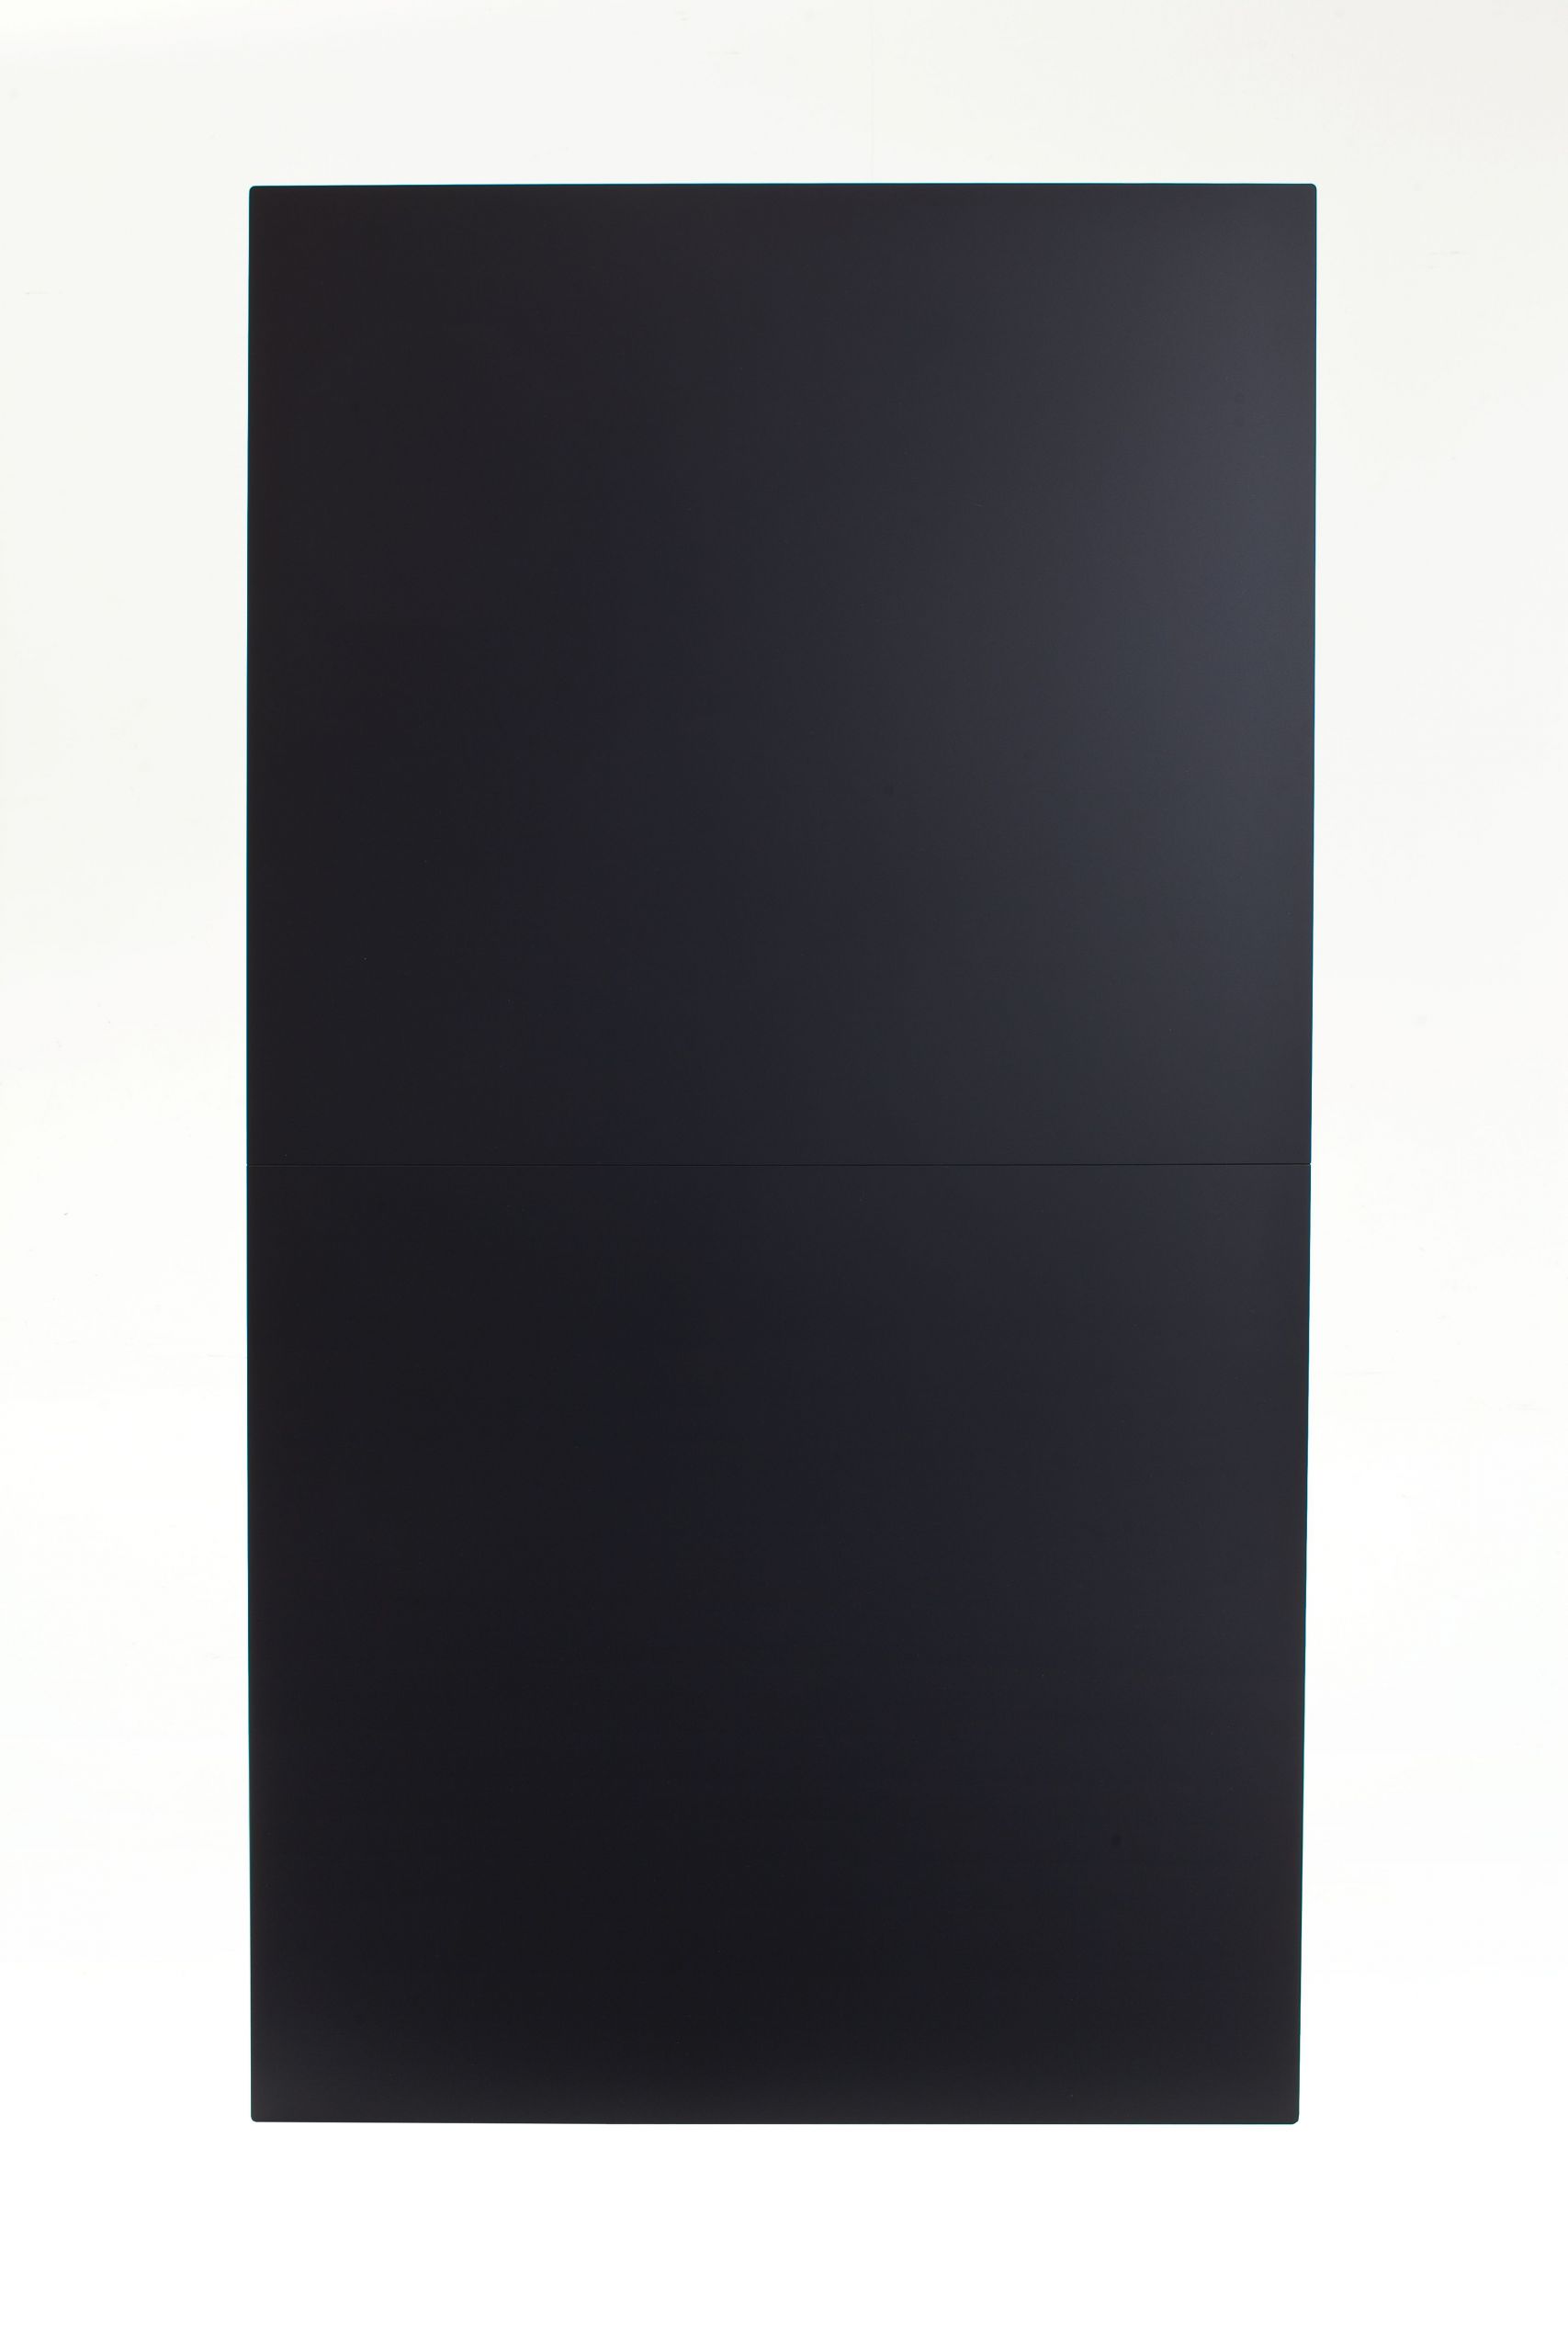 Esstisch Henri – LB ca. 165×90 cm, MDF, Schwarz, Platte Anti Schmutz Laminat